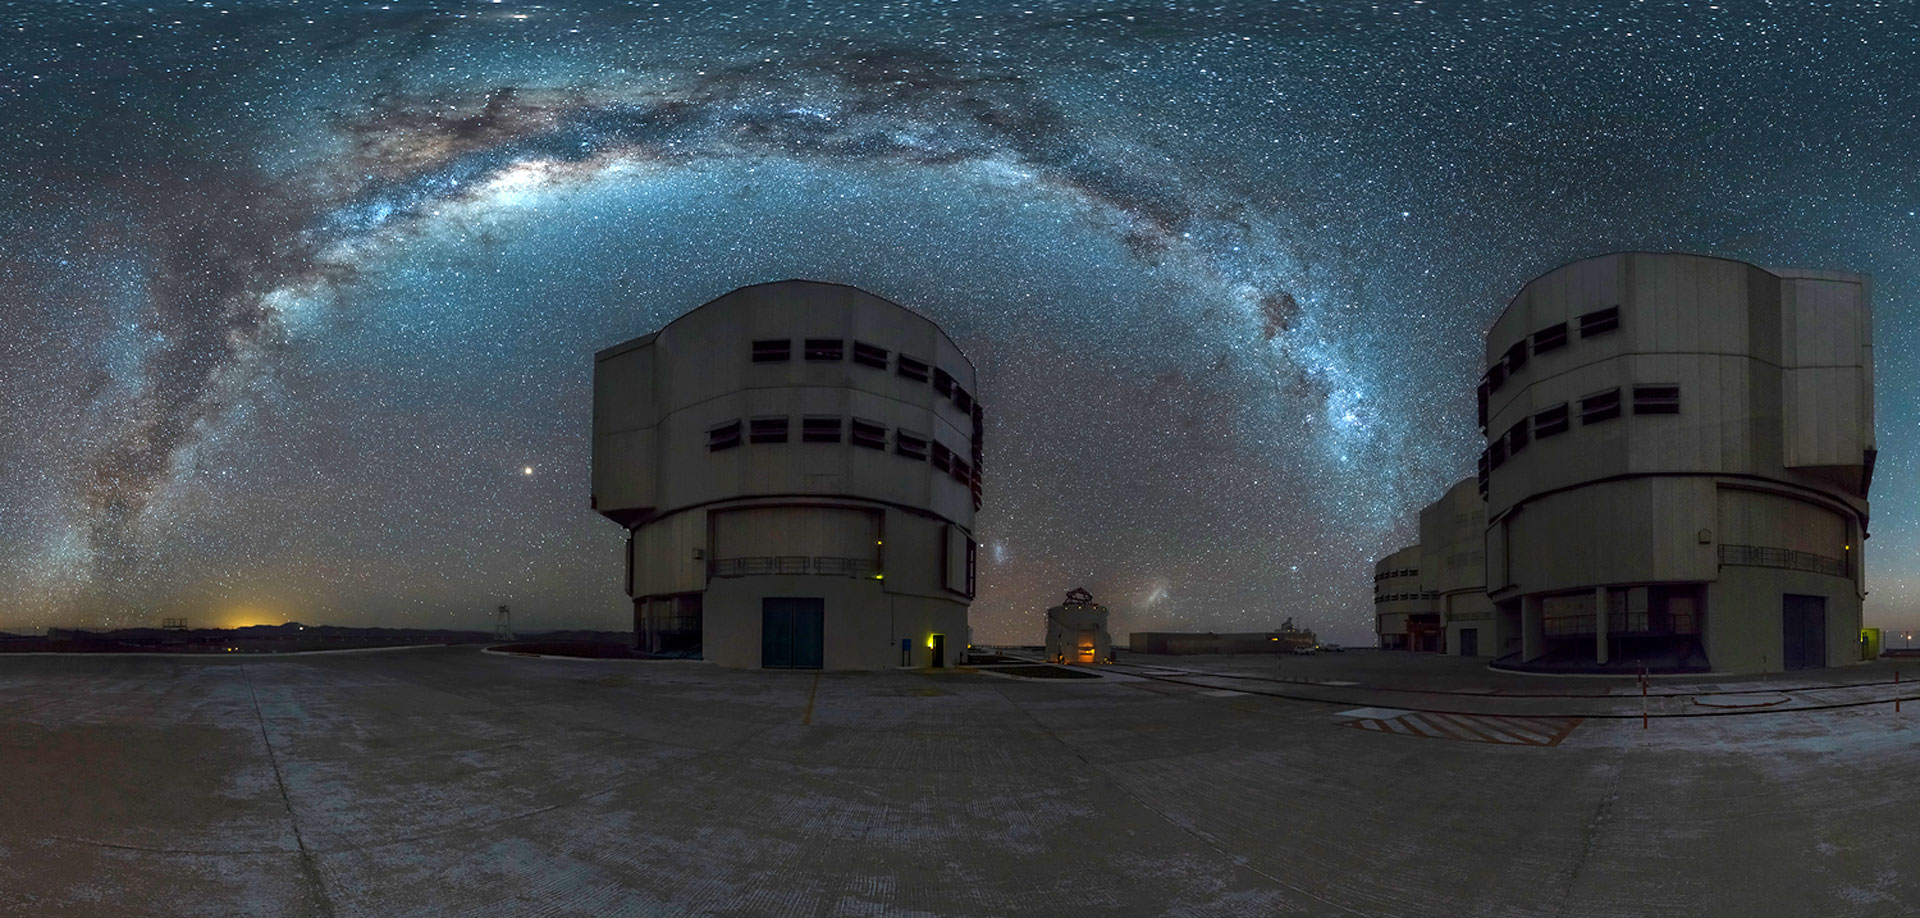 Le ciel étoilé au-dessus de l’observatoire du Cerro Paranal